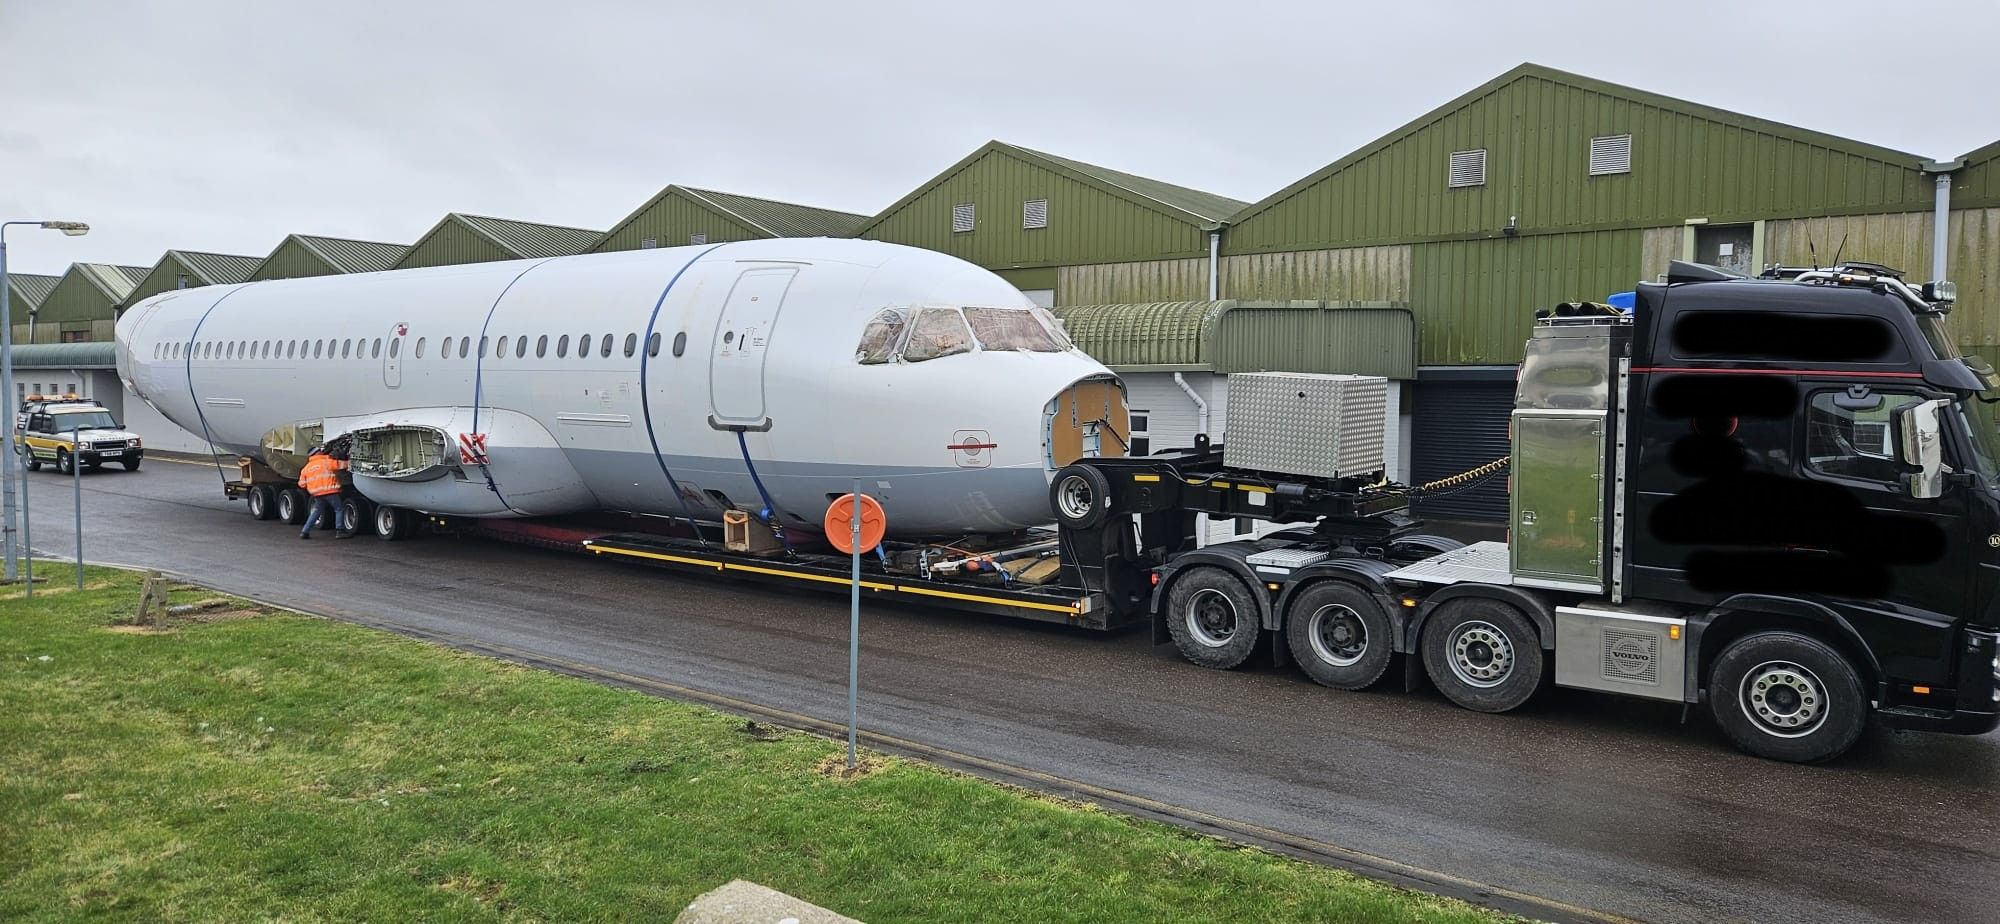 Germanwings Airbus A319 Fuselage On Lorry